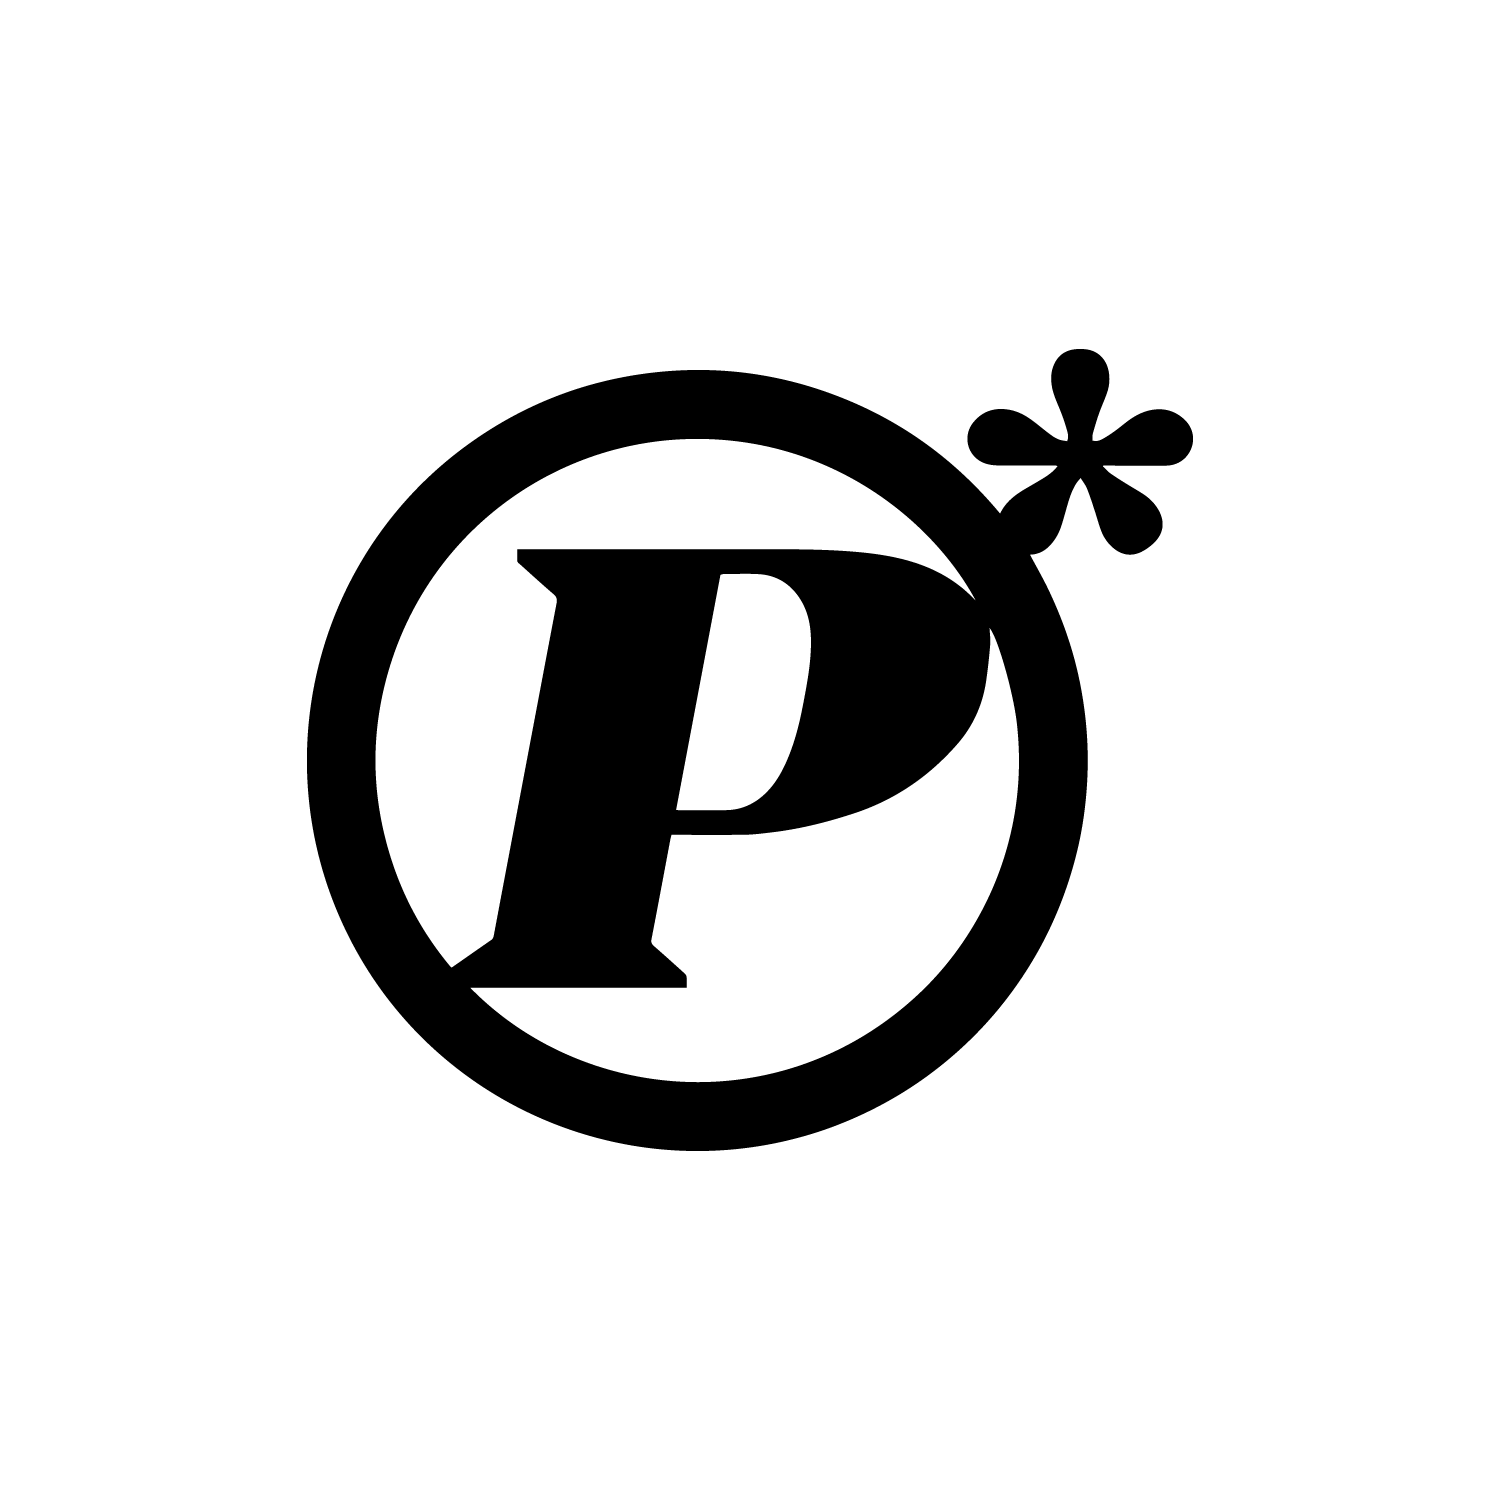 PARANTHESIS logo